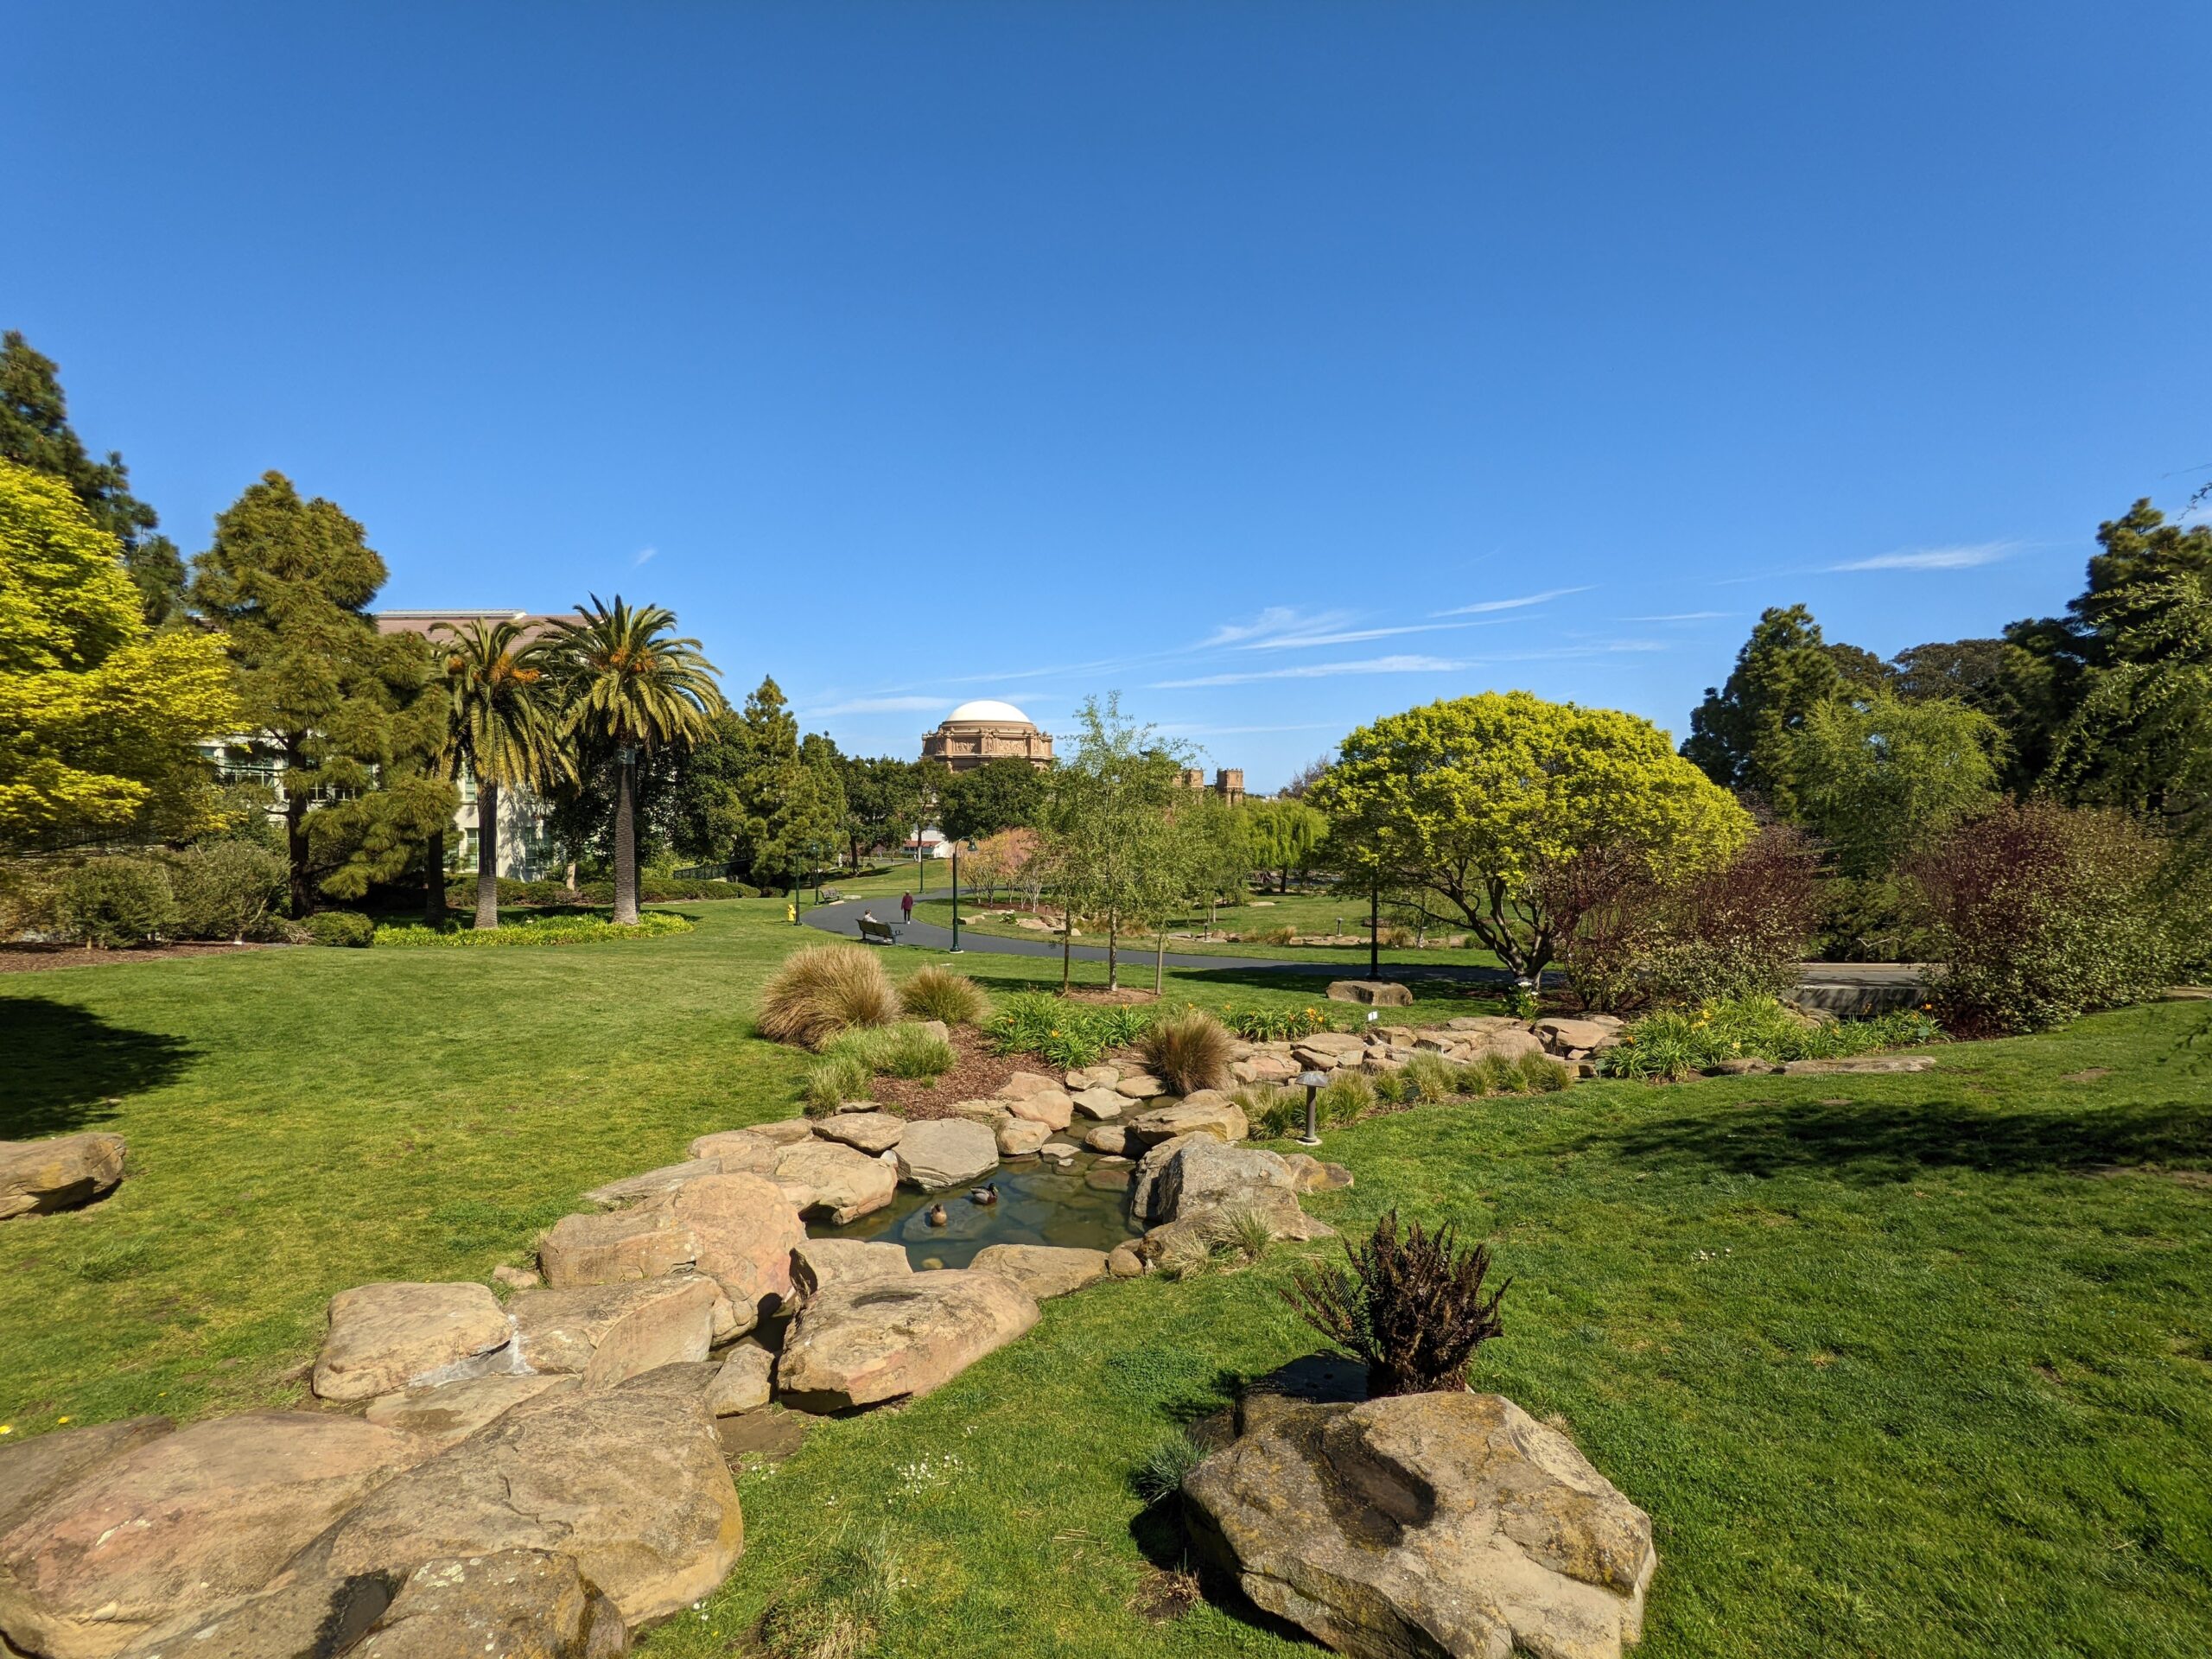 Park land near San Francisco Presidio